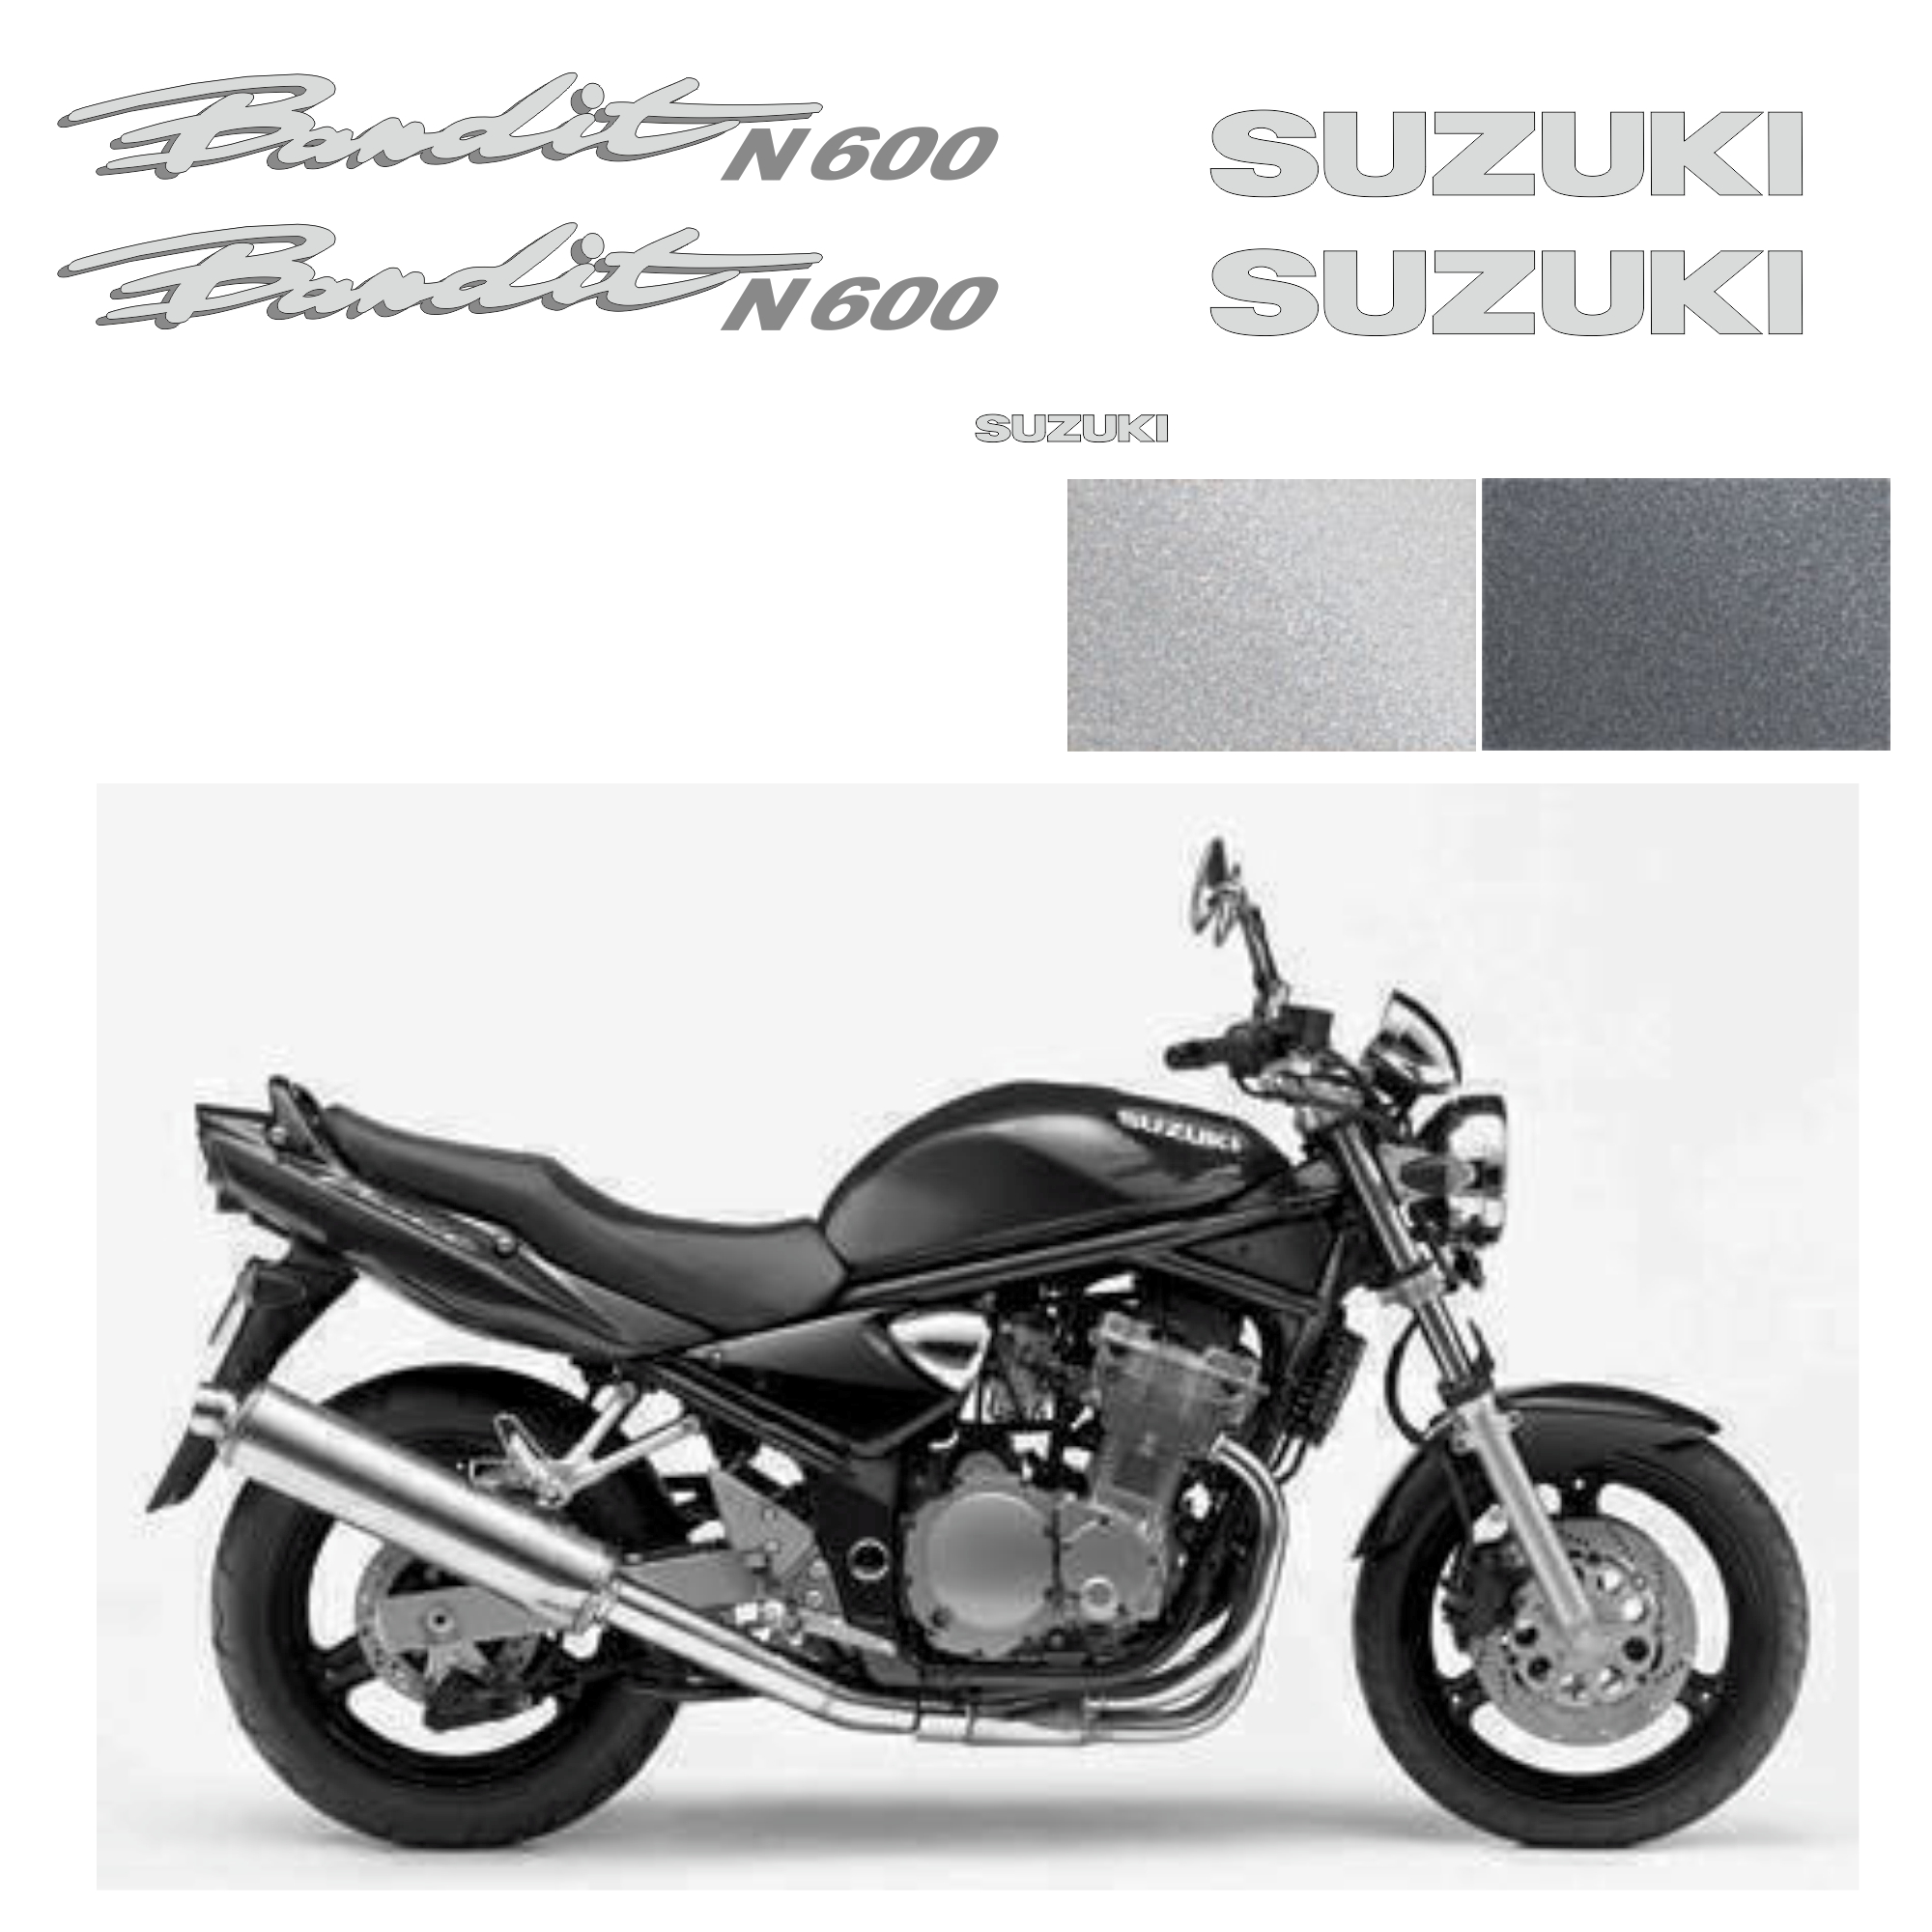 Suzuki GSF 600n Bandit 1995-00 г. чергный